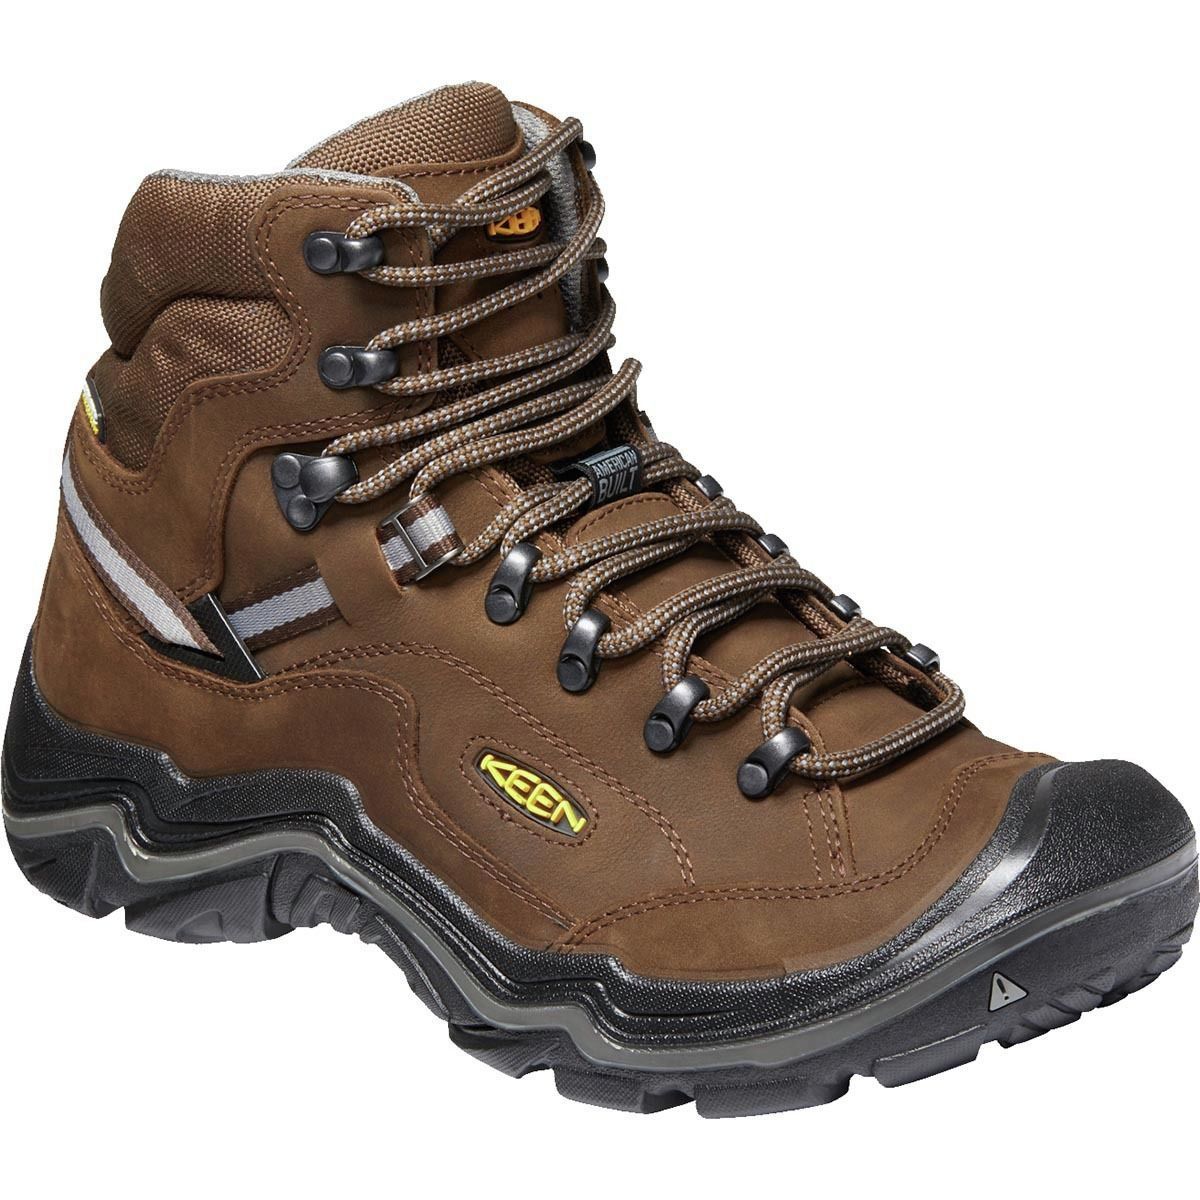 KEEN Durand II Mid Waterproof Hiking Boot - Wide - Men's ...